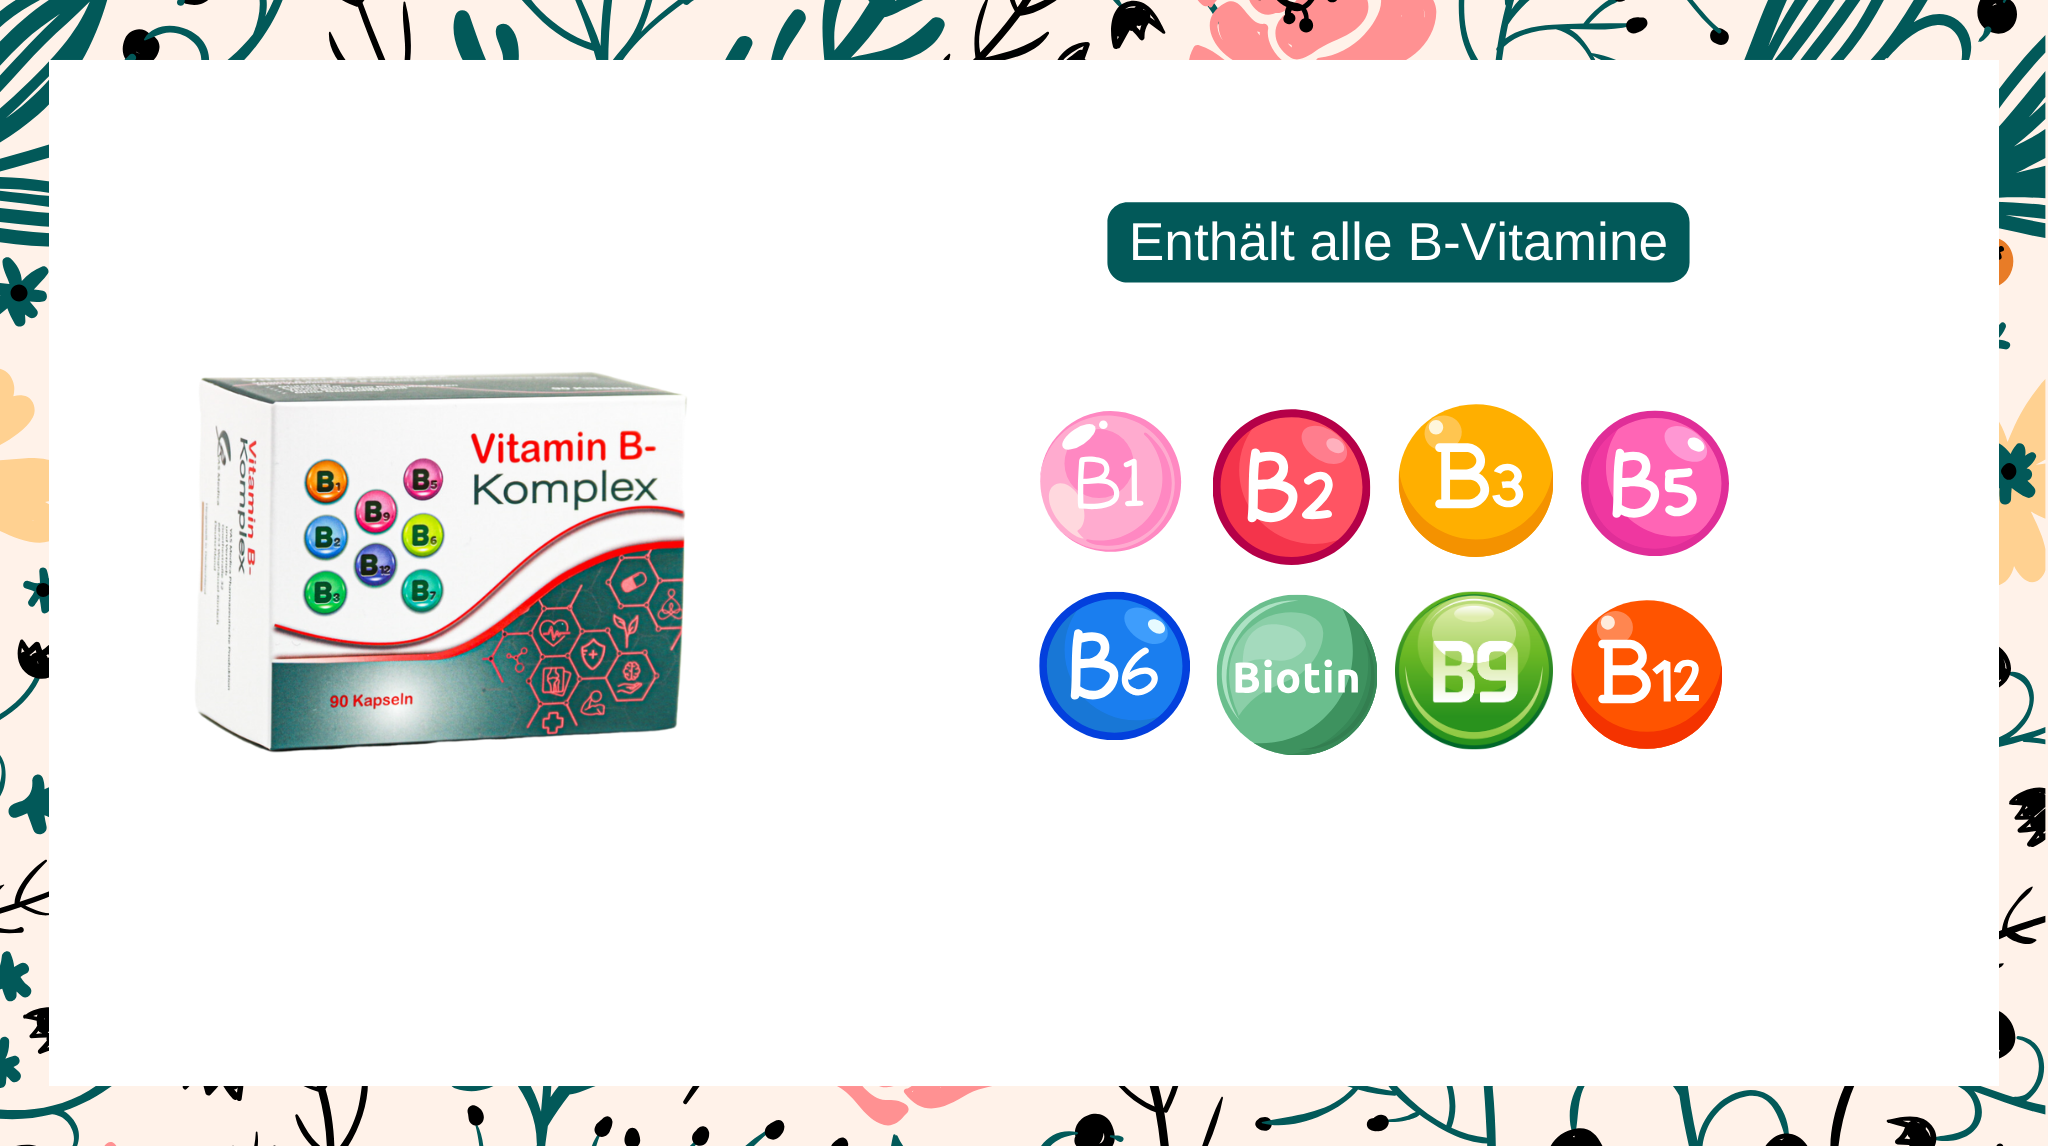 B Komplex Vitamine, B Vitamin Komplex hochdosiert, Nahrungsergänzungsmittel Vitaminkomplex aus allen B Vitaminen als bioaktive Vitamine, Inhaltsstoffe in Vitamin B Komplex. Inhaltsstoffe in einer Kapsel alle B Komplex Vitamine, Vitamin B1, Vitamin B2, Vitamin B3, Vitamin B6, Vitamin B7 (Biotin, Vitamin B9 Folsäure, Vitamin B12 bioaktiv als Methylcobalamin. Niacin, Pyridoxin, Vitamin H, Folsäure, Riboflavin, Thiamin, Panthotensäure